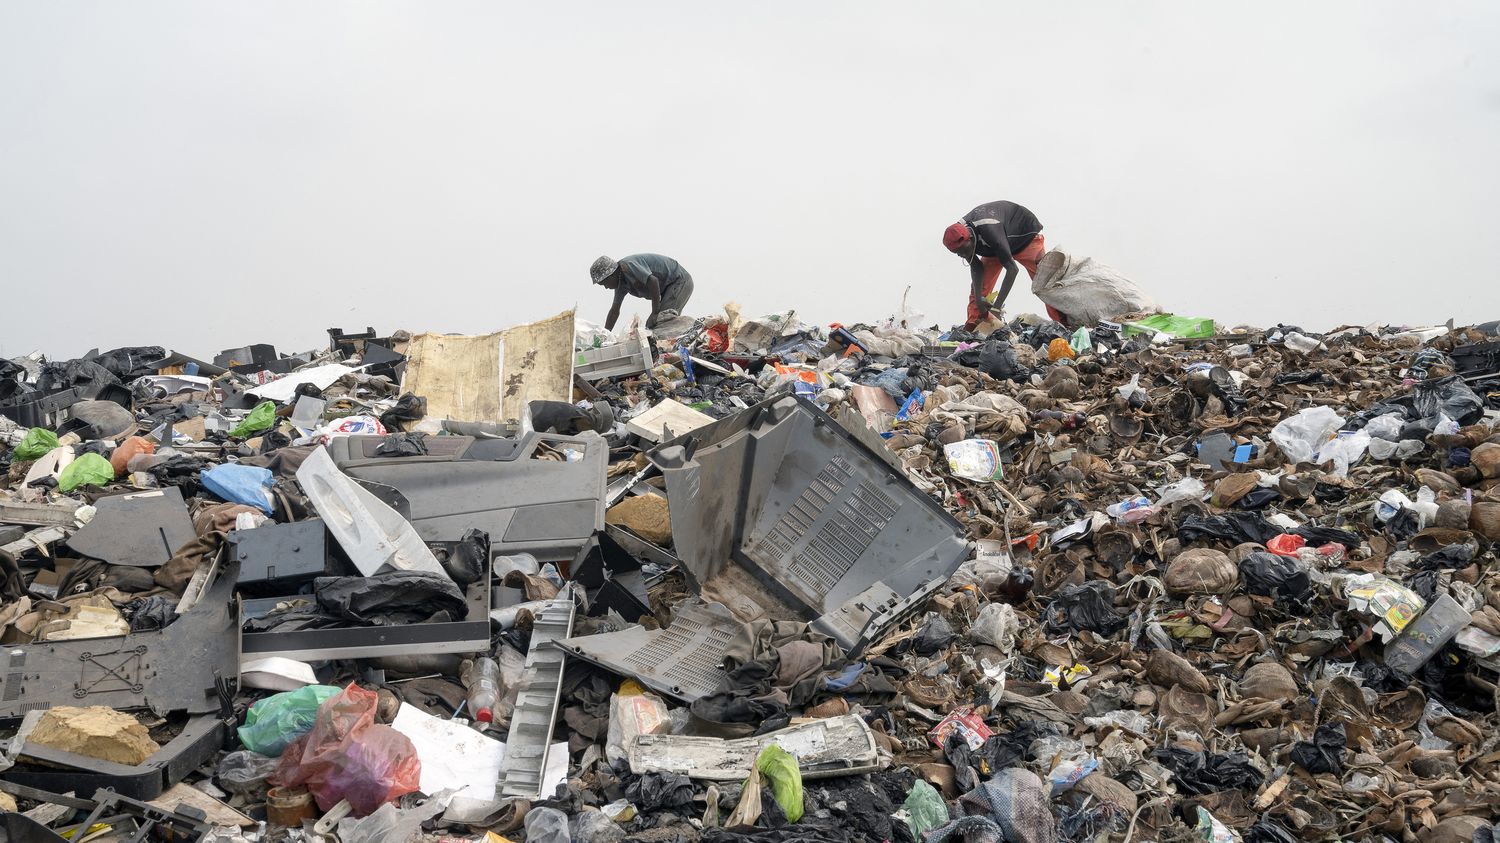 Le volume de déchets dans le monde ne cesse de croître de manière exponentielle, alerte l'ONU